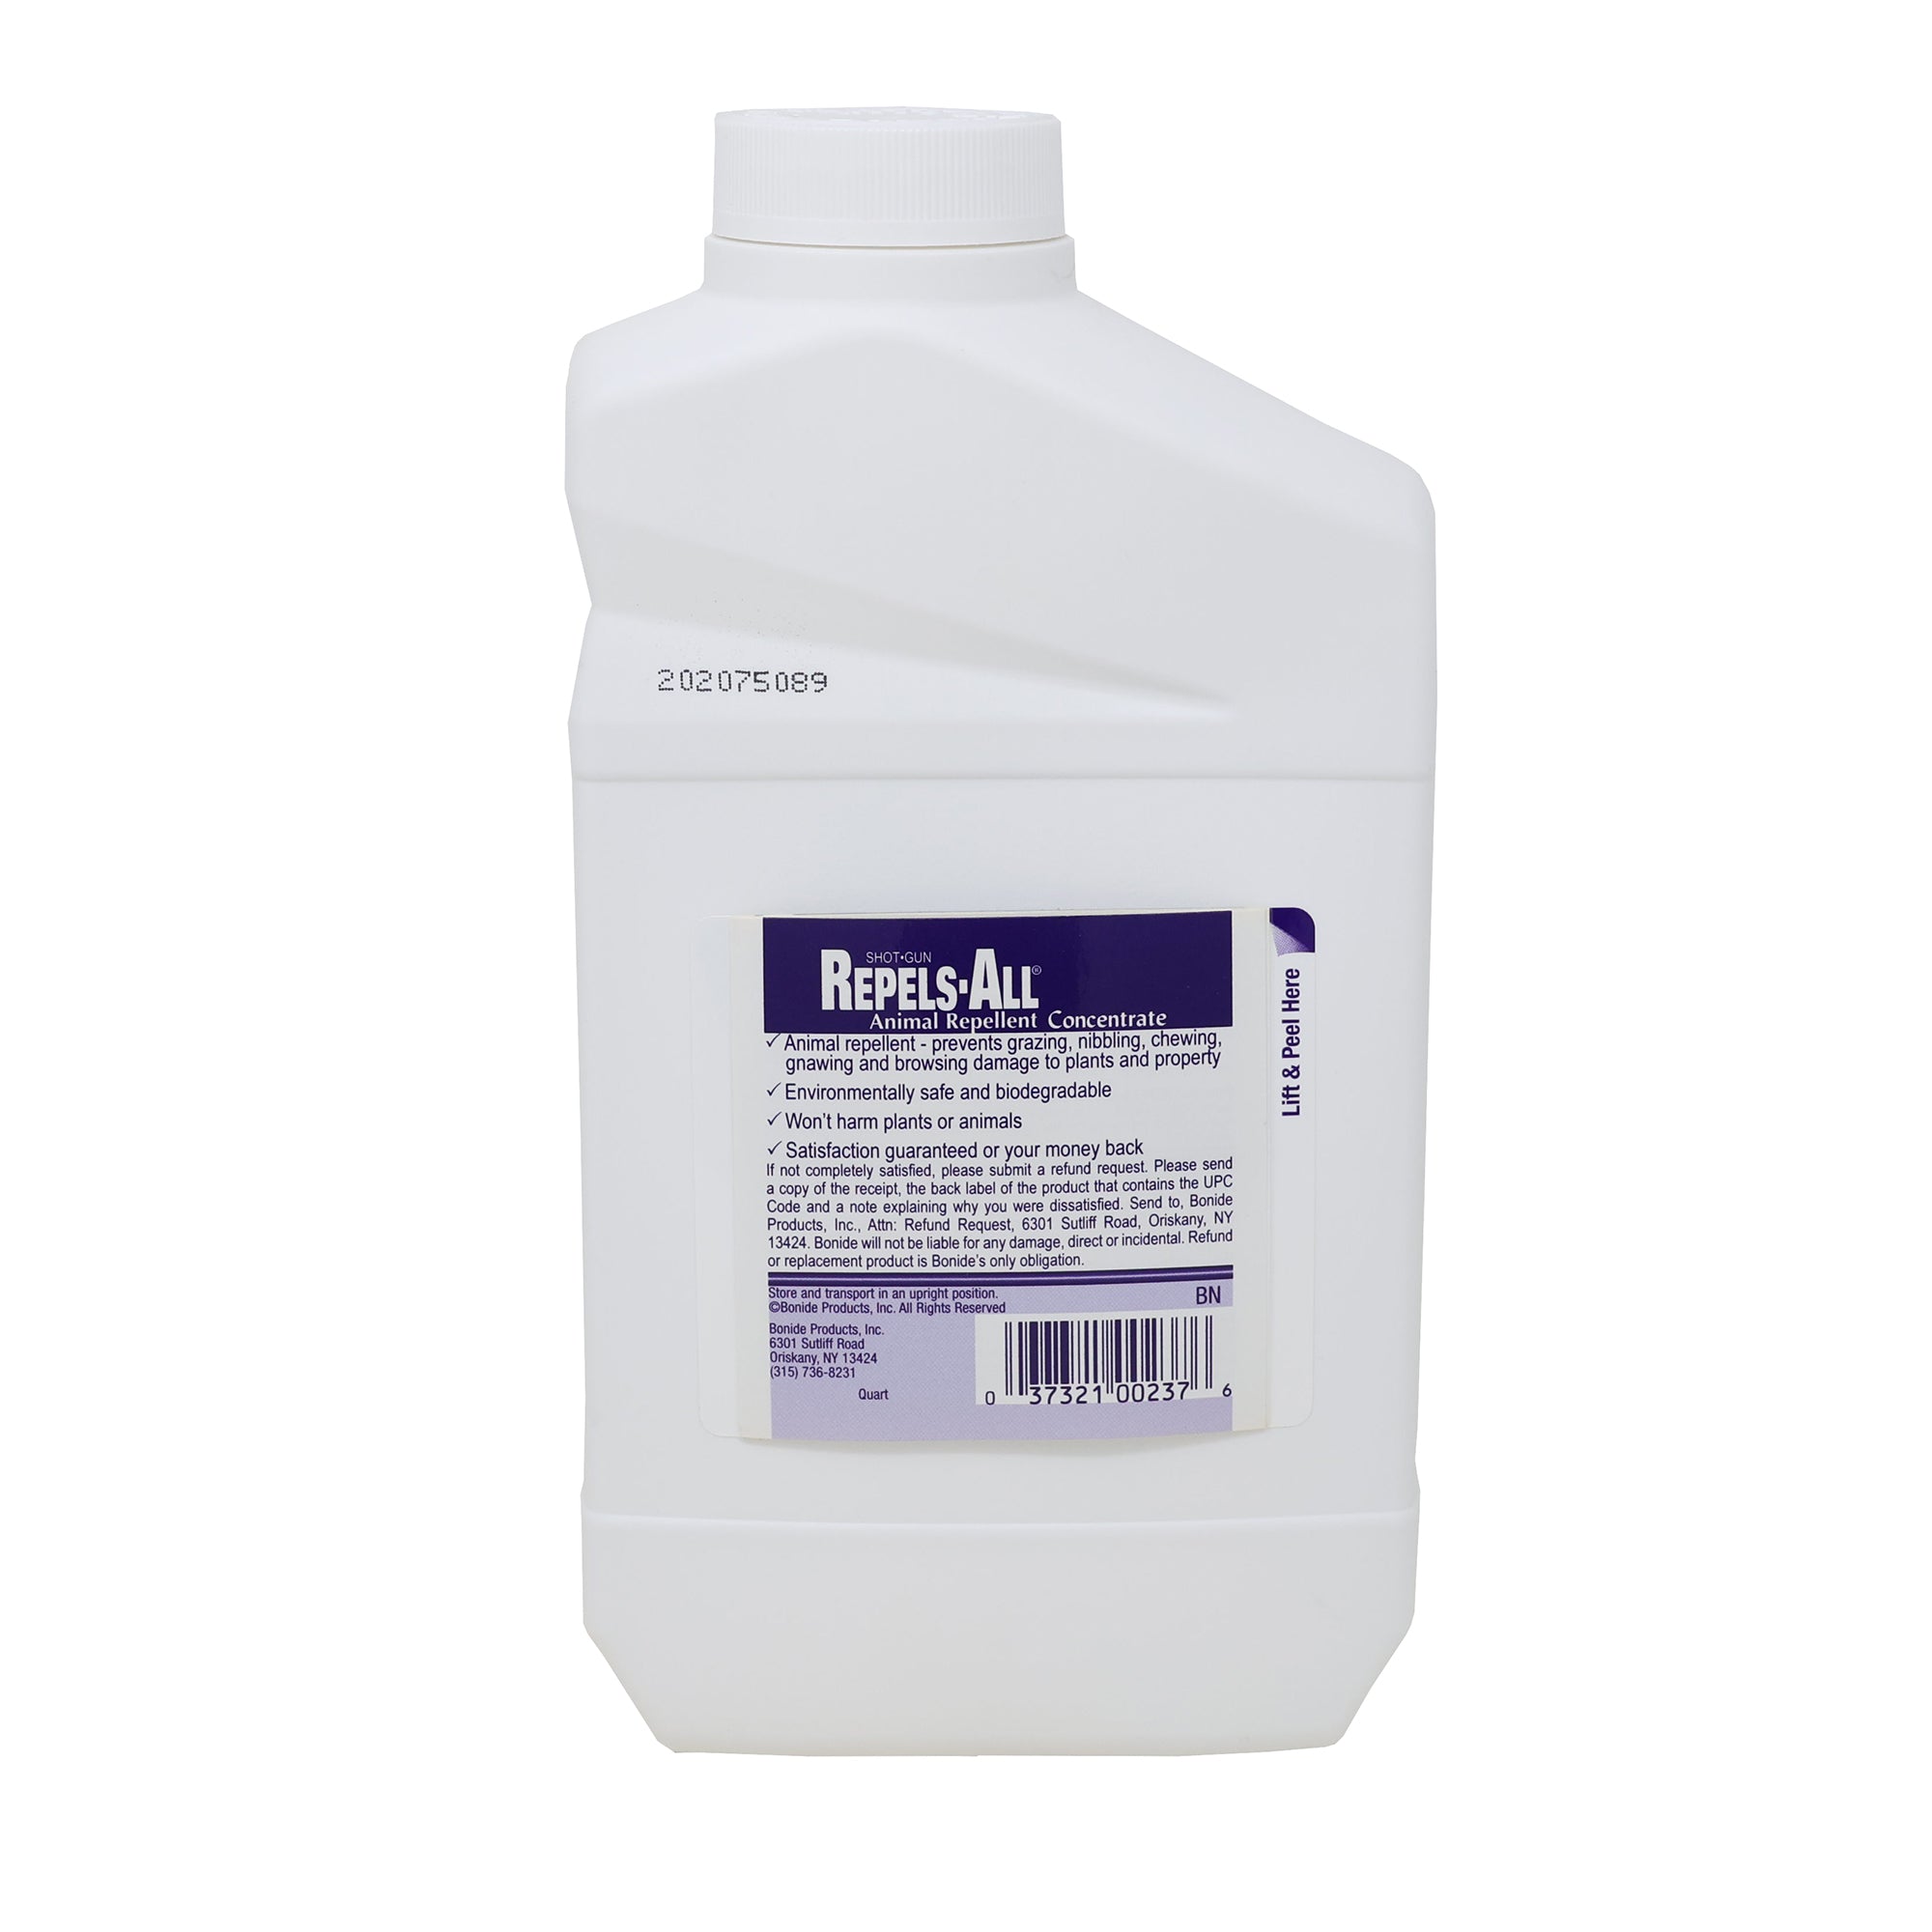 Bonide Repels-All Animal Repellent Liquid Concentrate, 32-Ounce